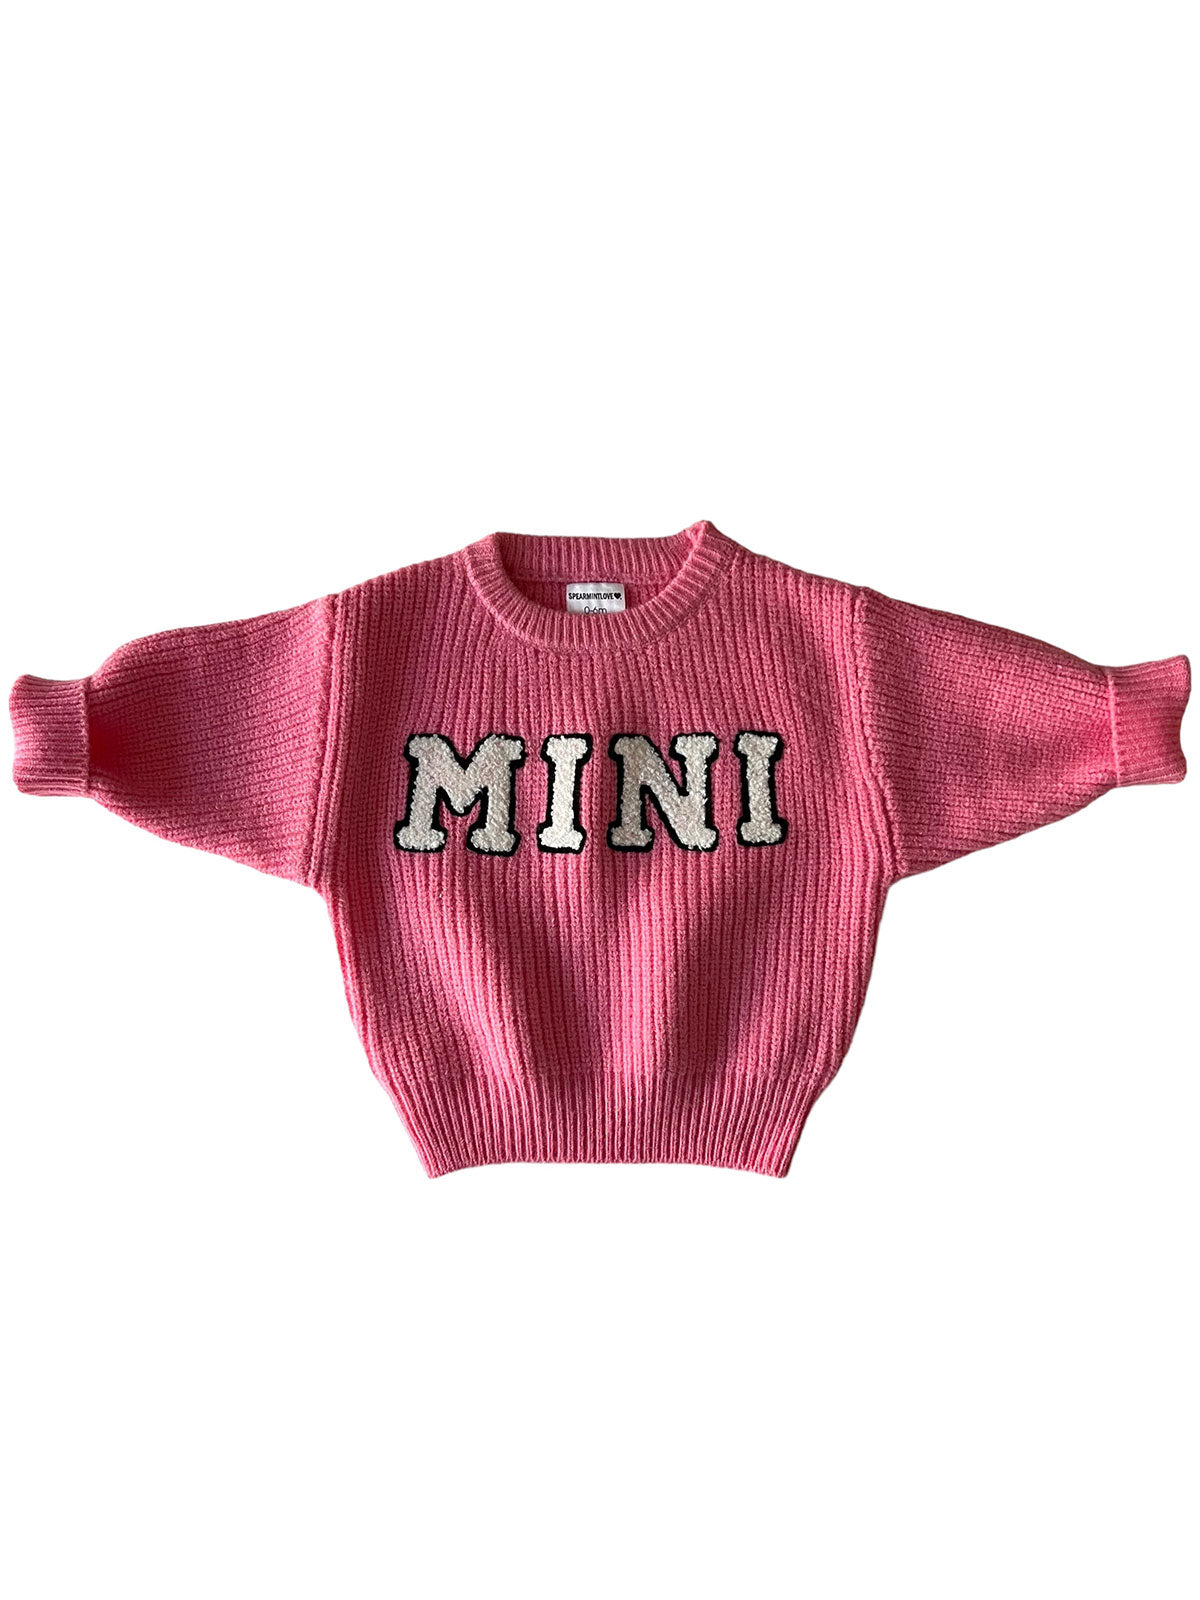 Mini Knit Sweater, Bubblegum